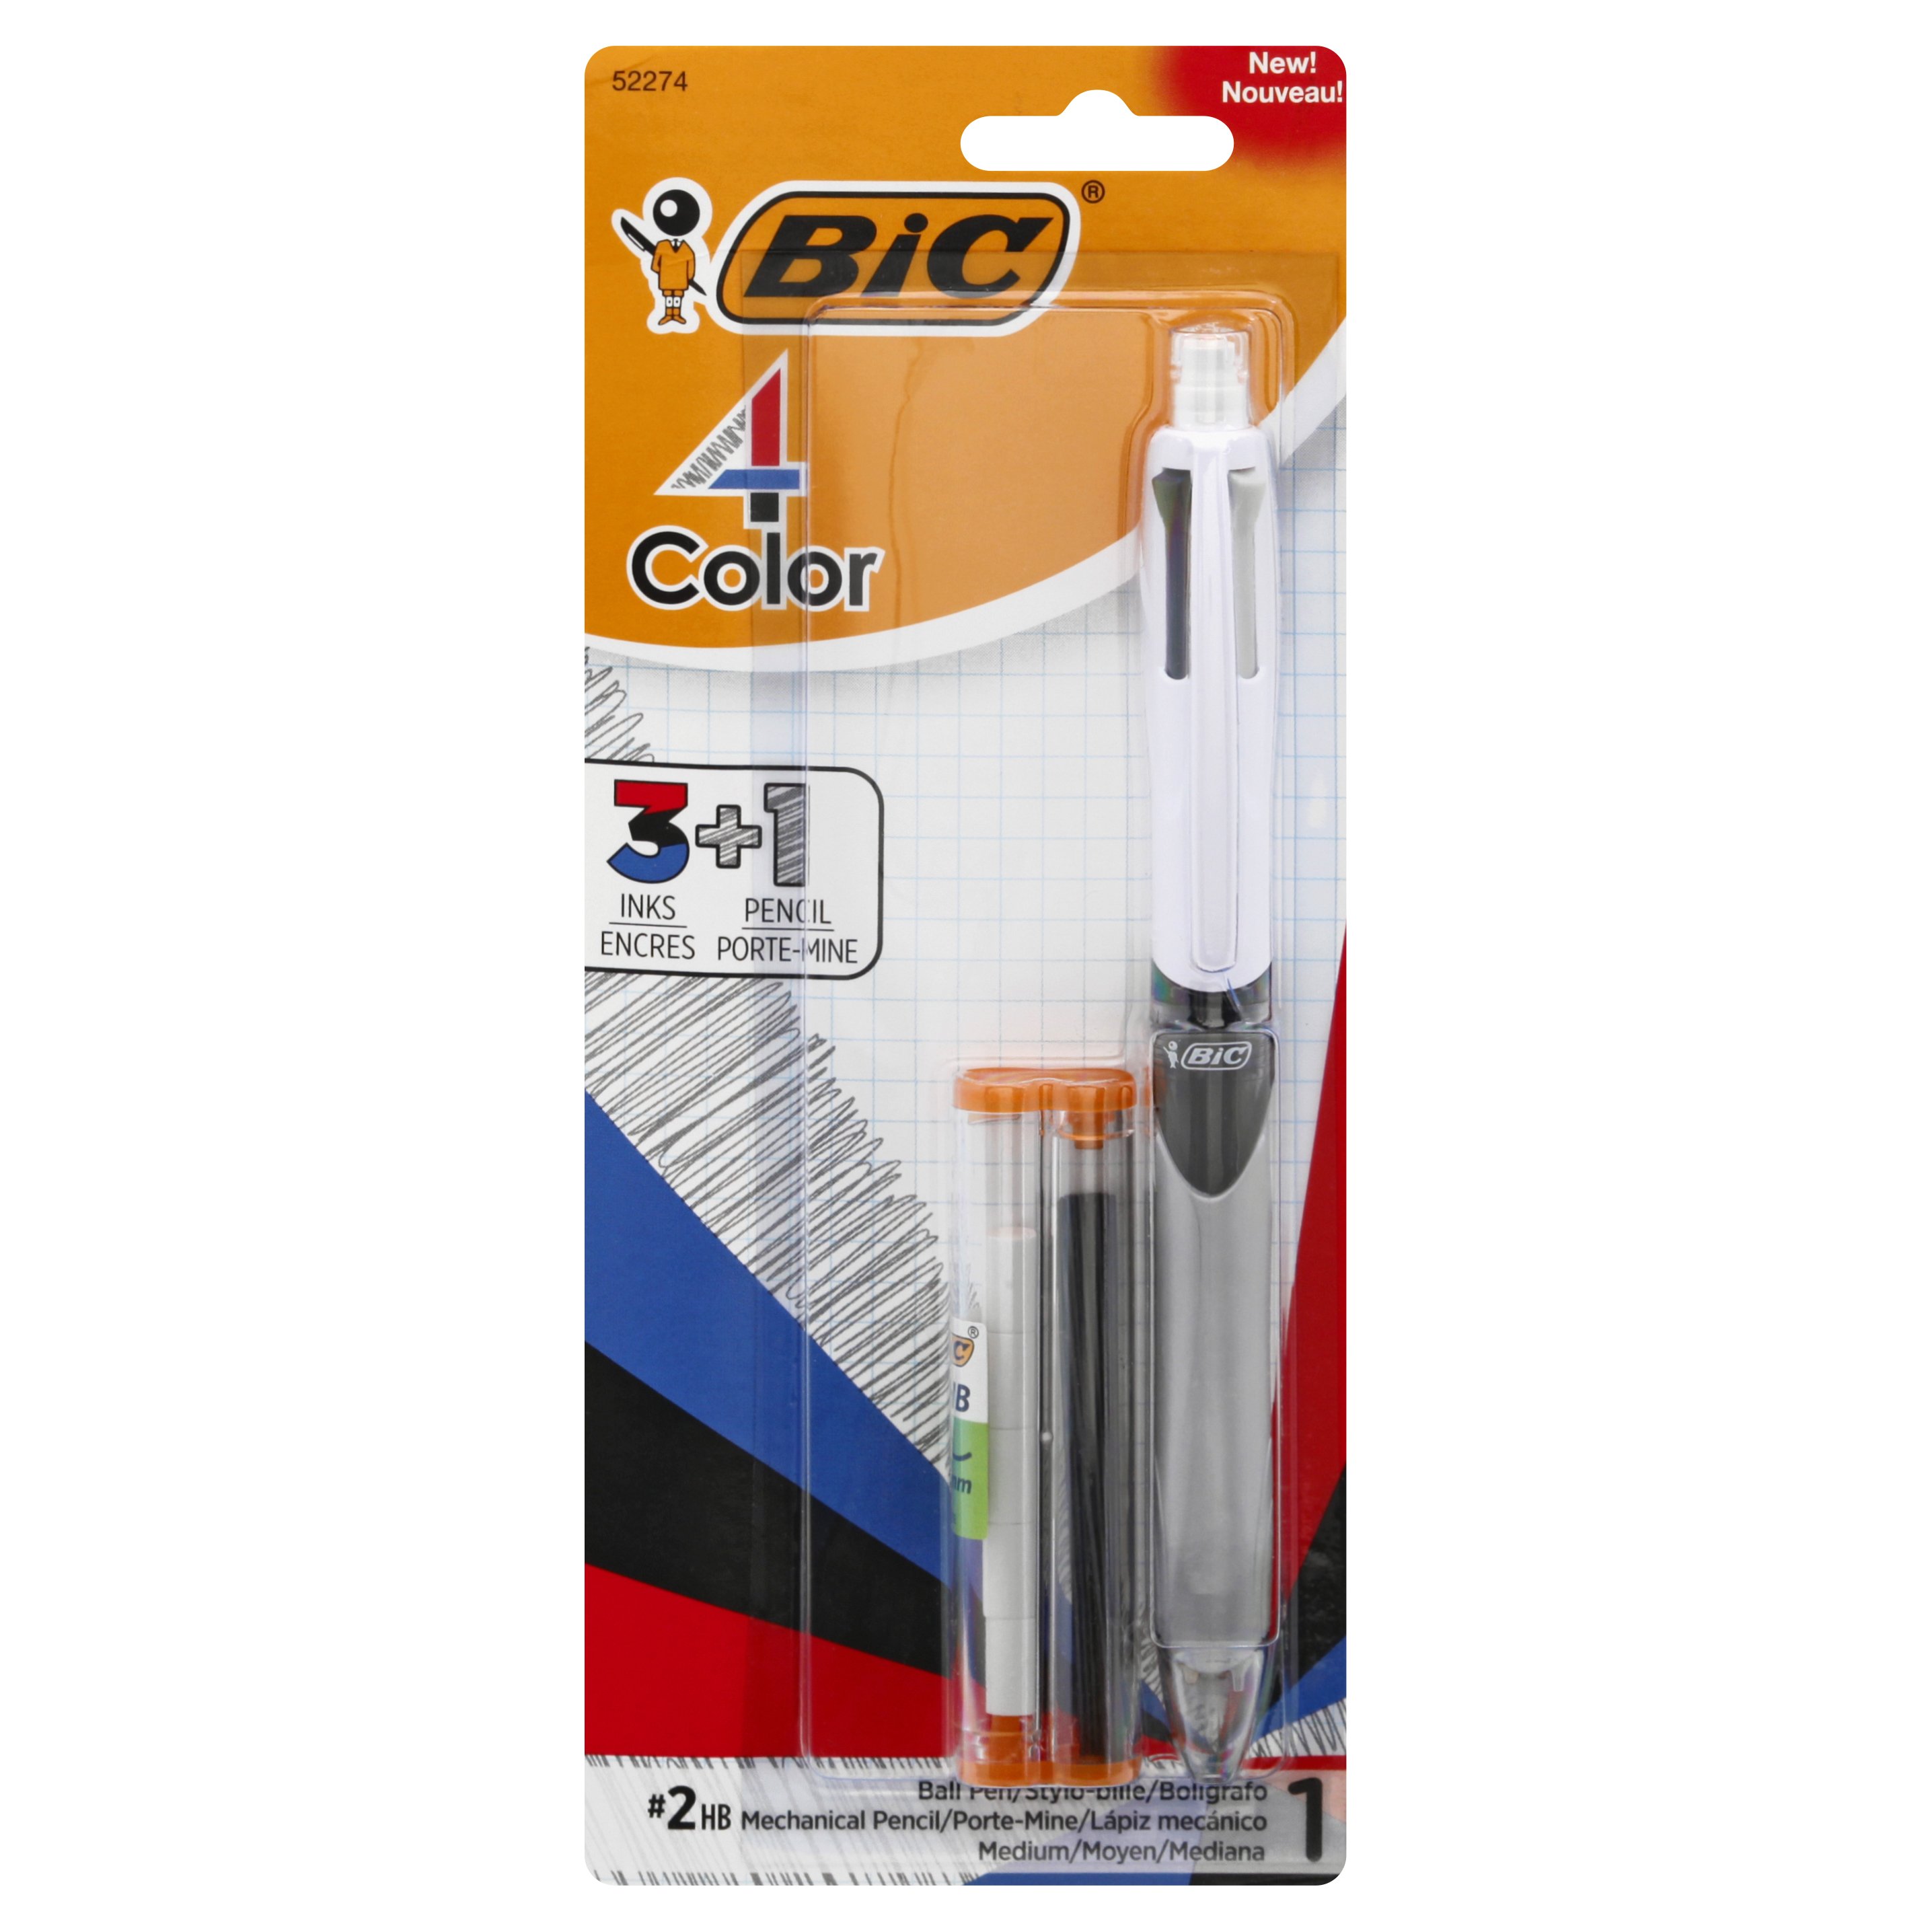 Meisje Verdragen kleurstof Bic 4 Color 3+1 Pen & Pencil - Shop School & Office Supplies at H-E-B